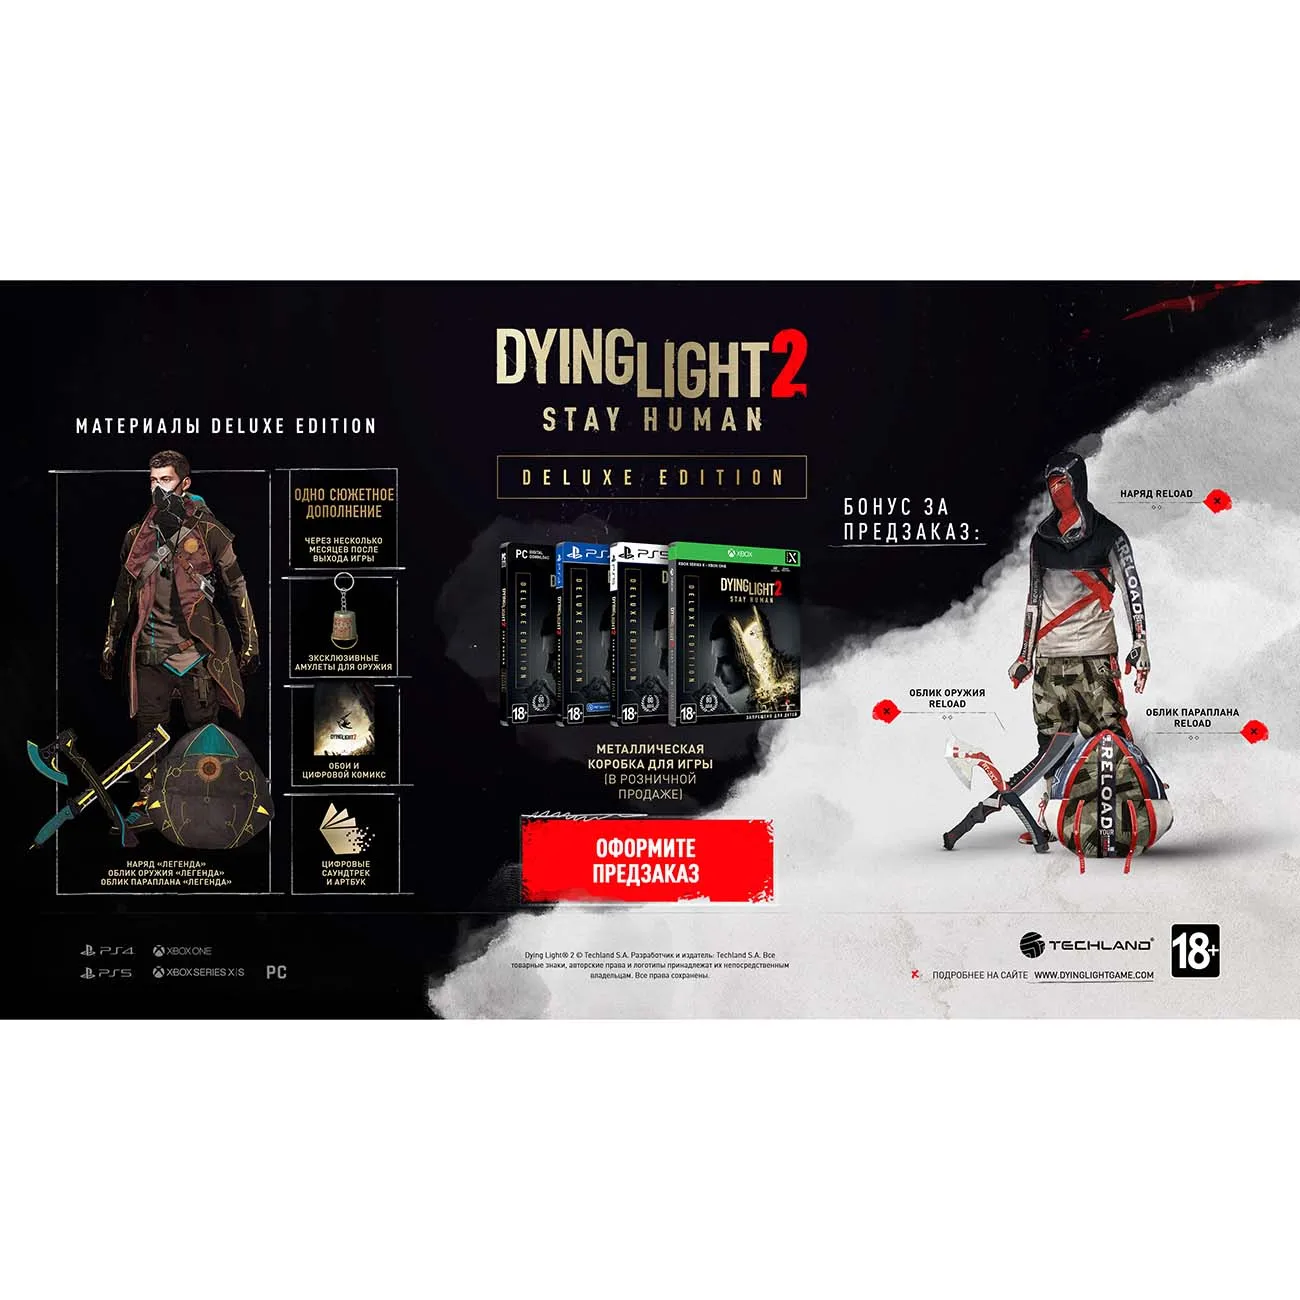 Коллекционное издание Dying Light 2 ящик. Dying Light 2 stay Human коллекционное издание. Коллекционное издание Dying Light 2 ps4.